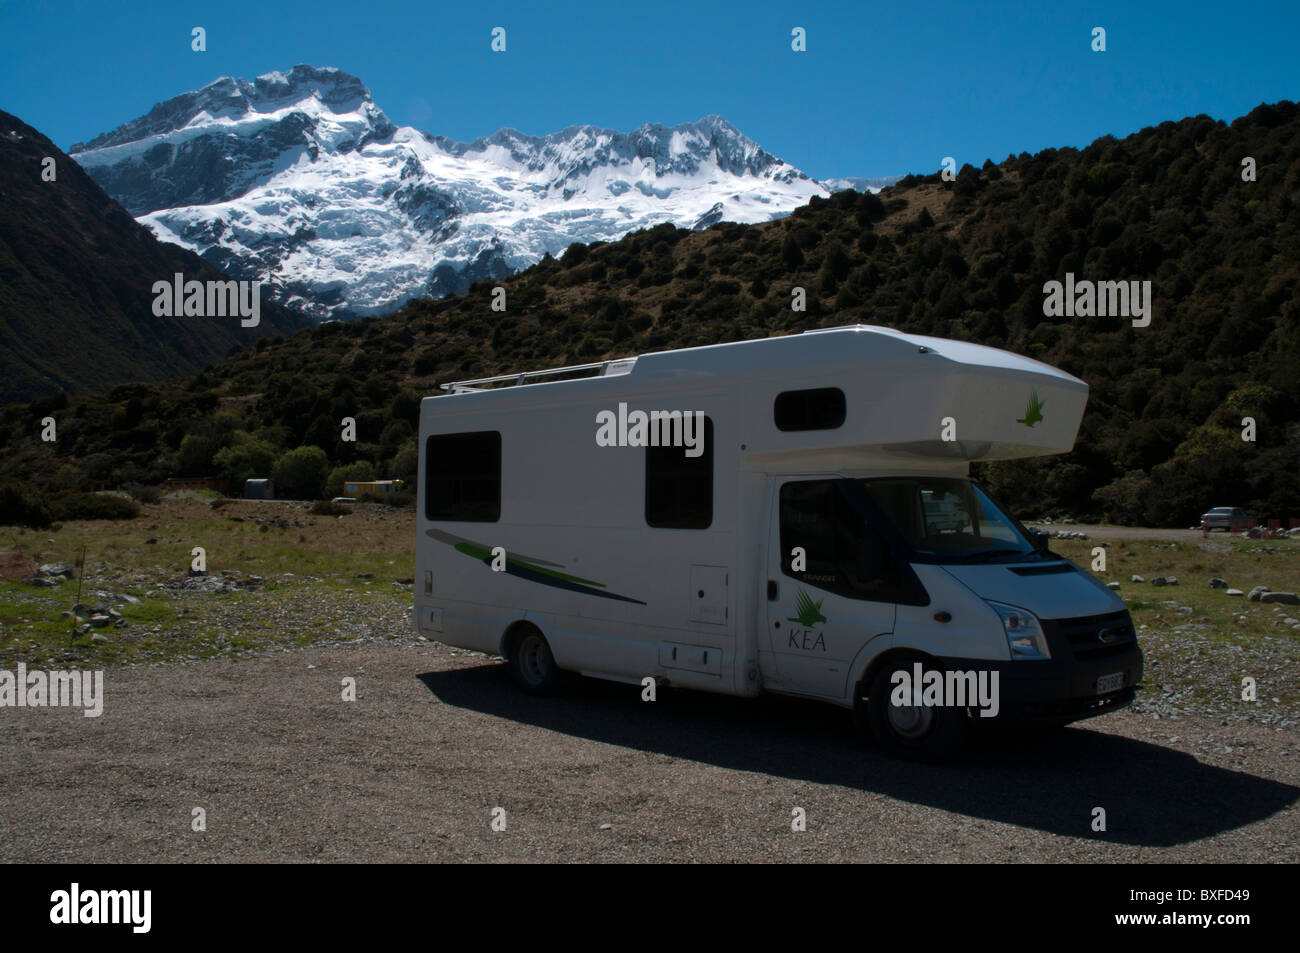 Campervan in front of Mount Sefton in the Southern Alpes   Wohnmobil vor dem Mount Sefton in den Südalpen Stock Photo